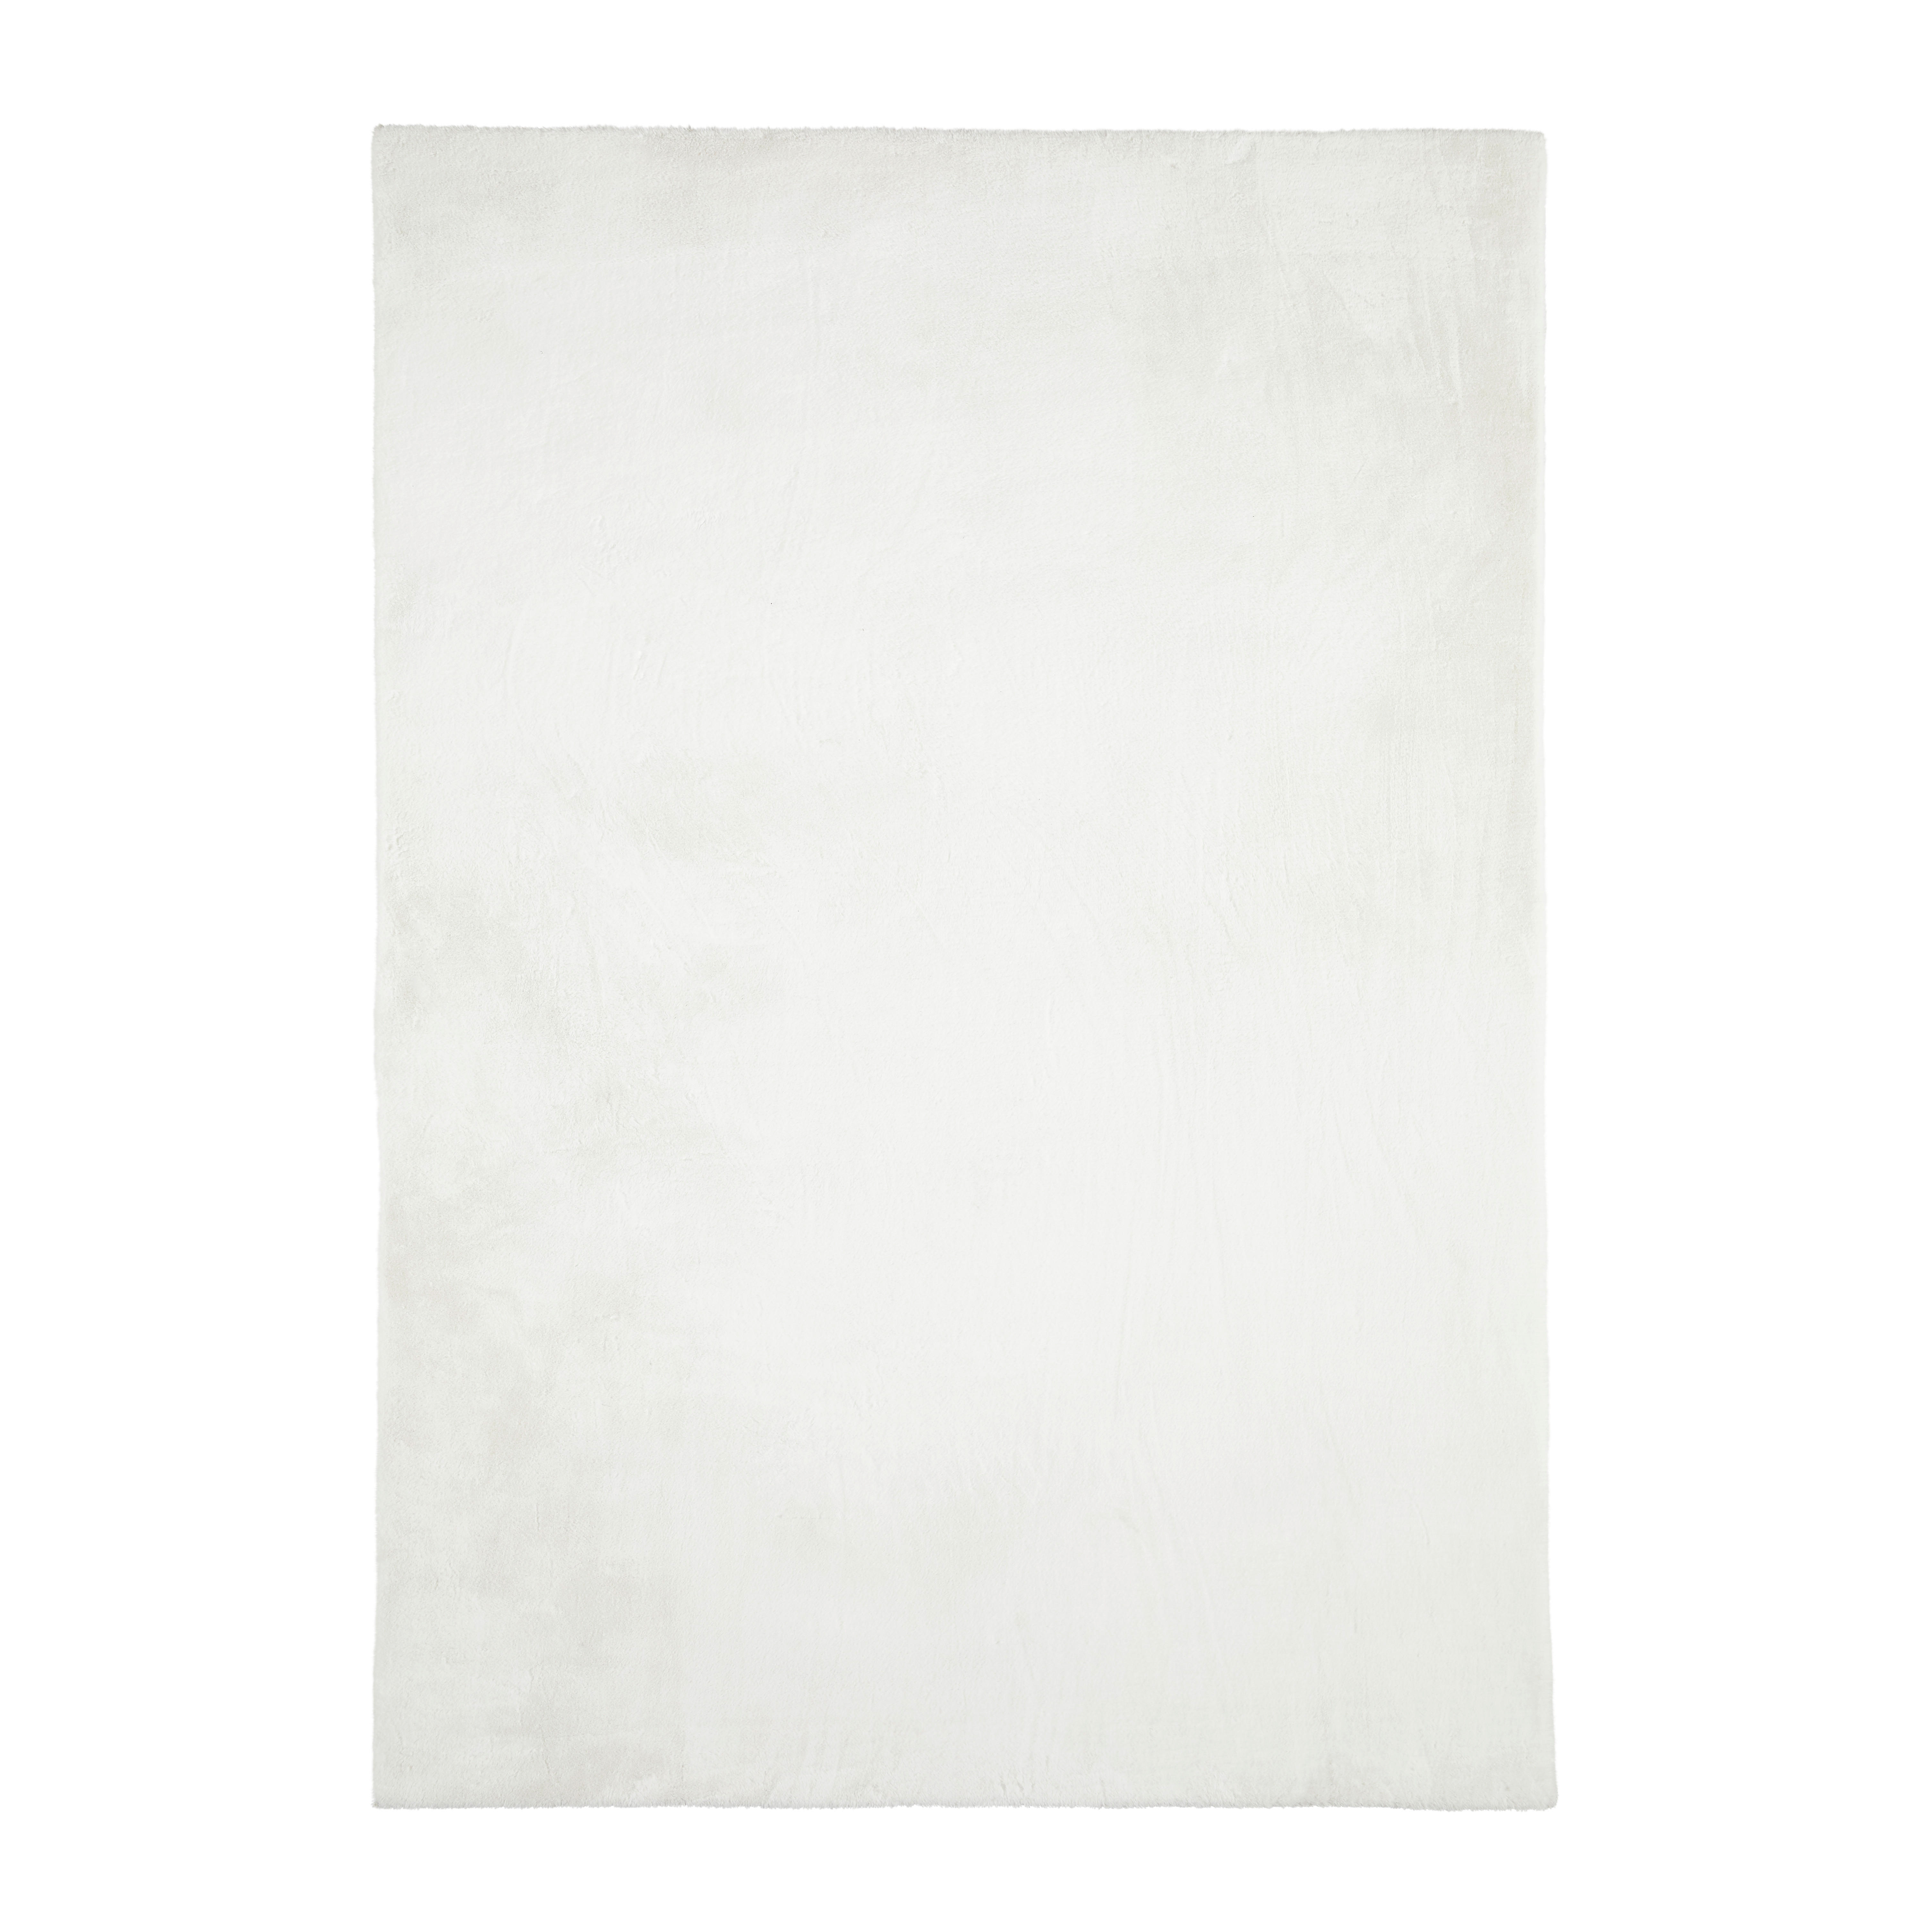 HOCHFLORTEPPICH 70/130 cm  - Weiß, Design, Textil (70/130cm) - Novel